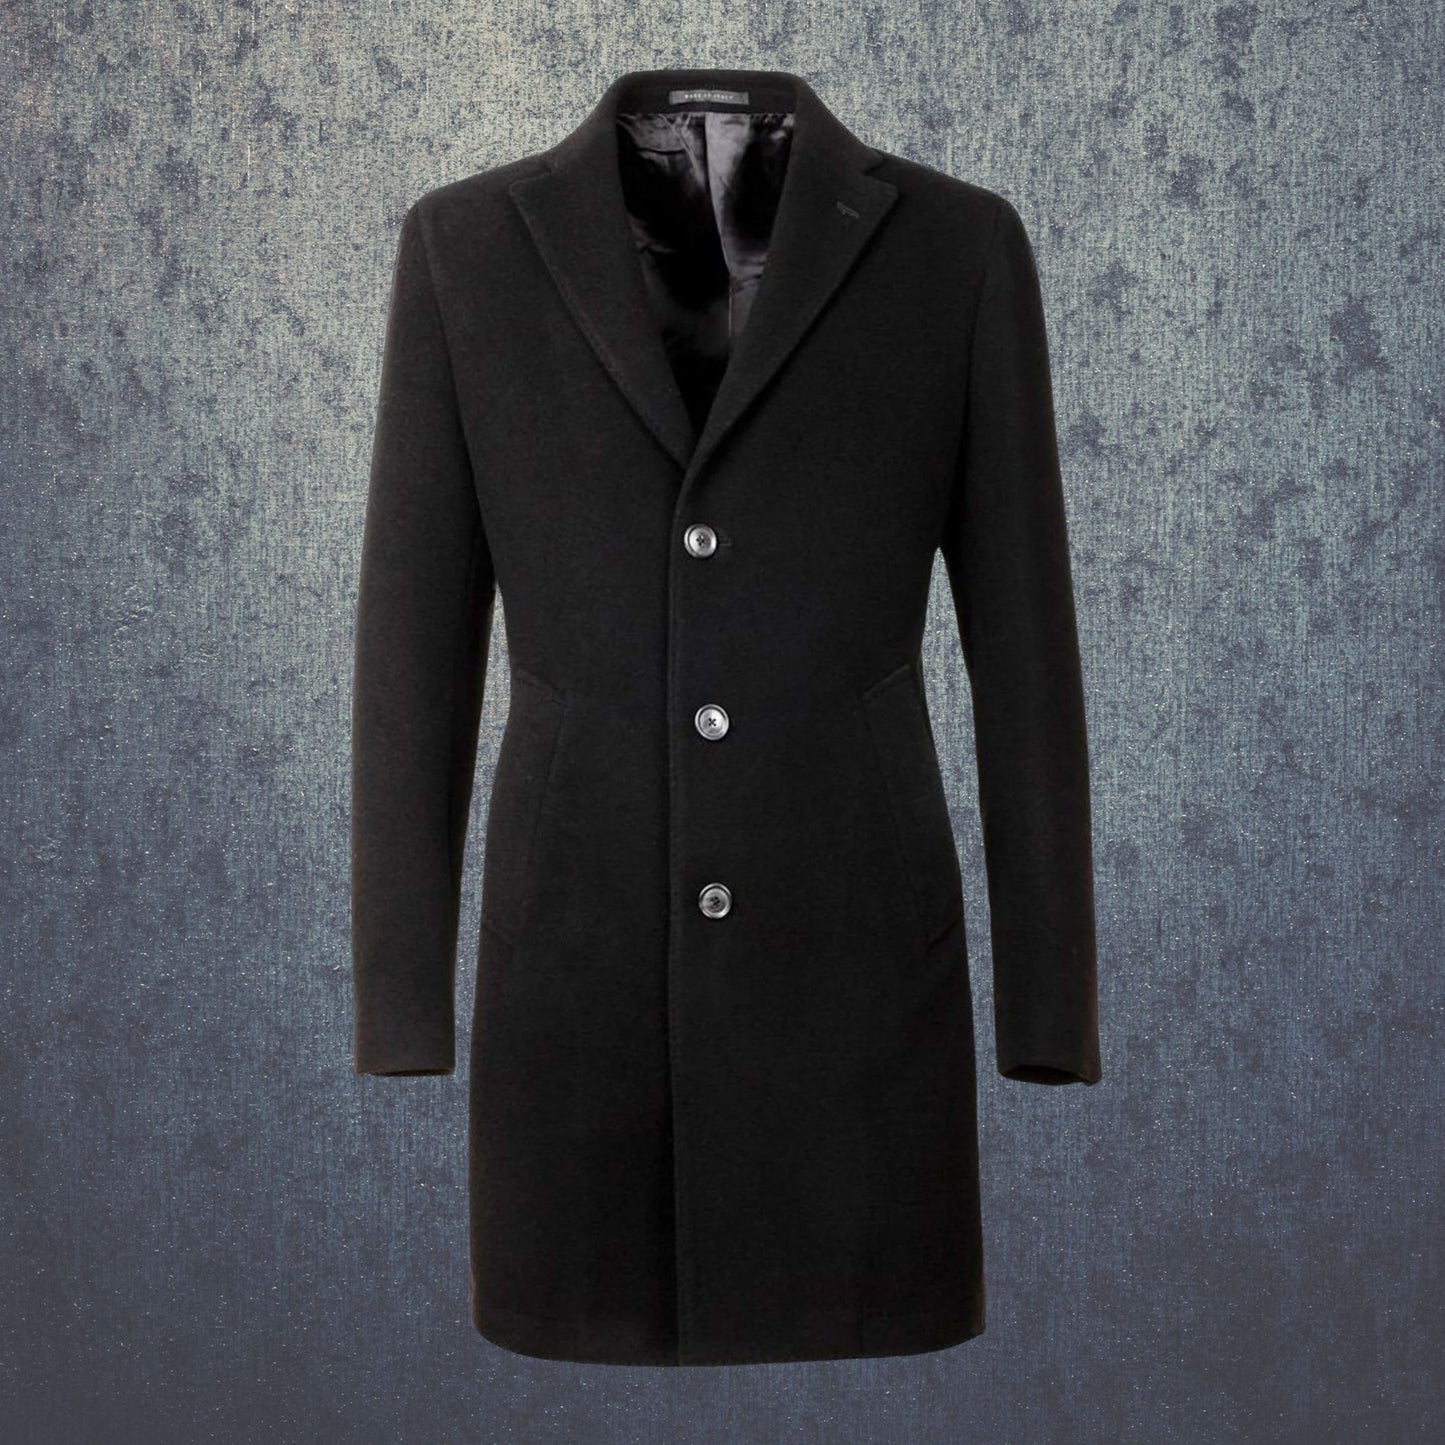 Pánský krátký kabát s příměsí kašmíru černý